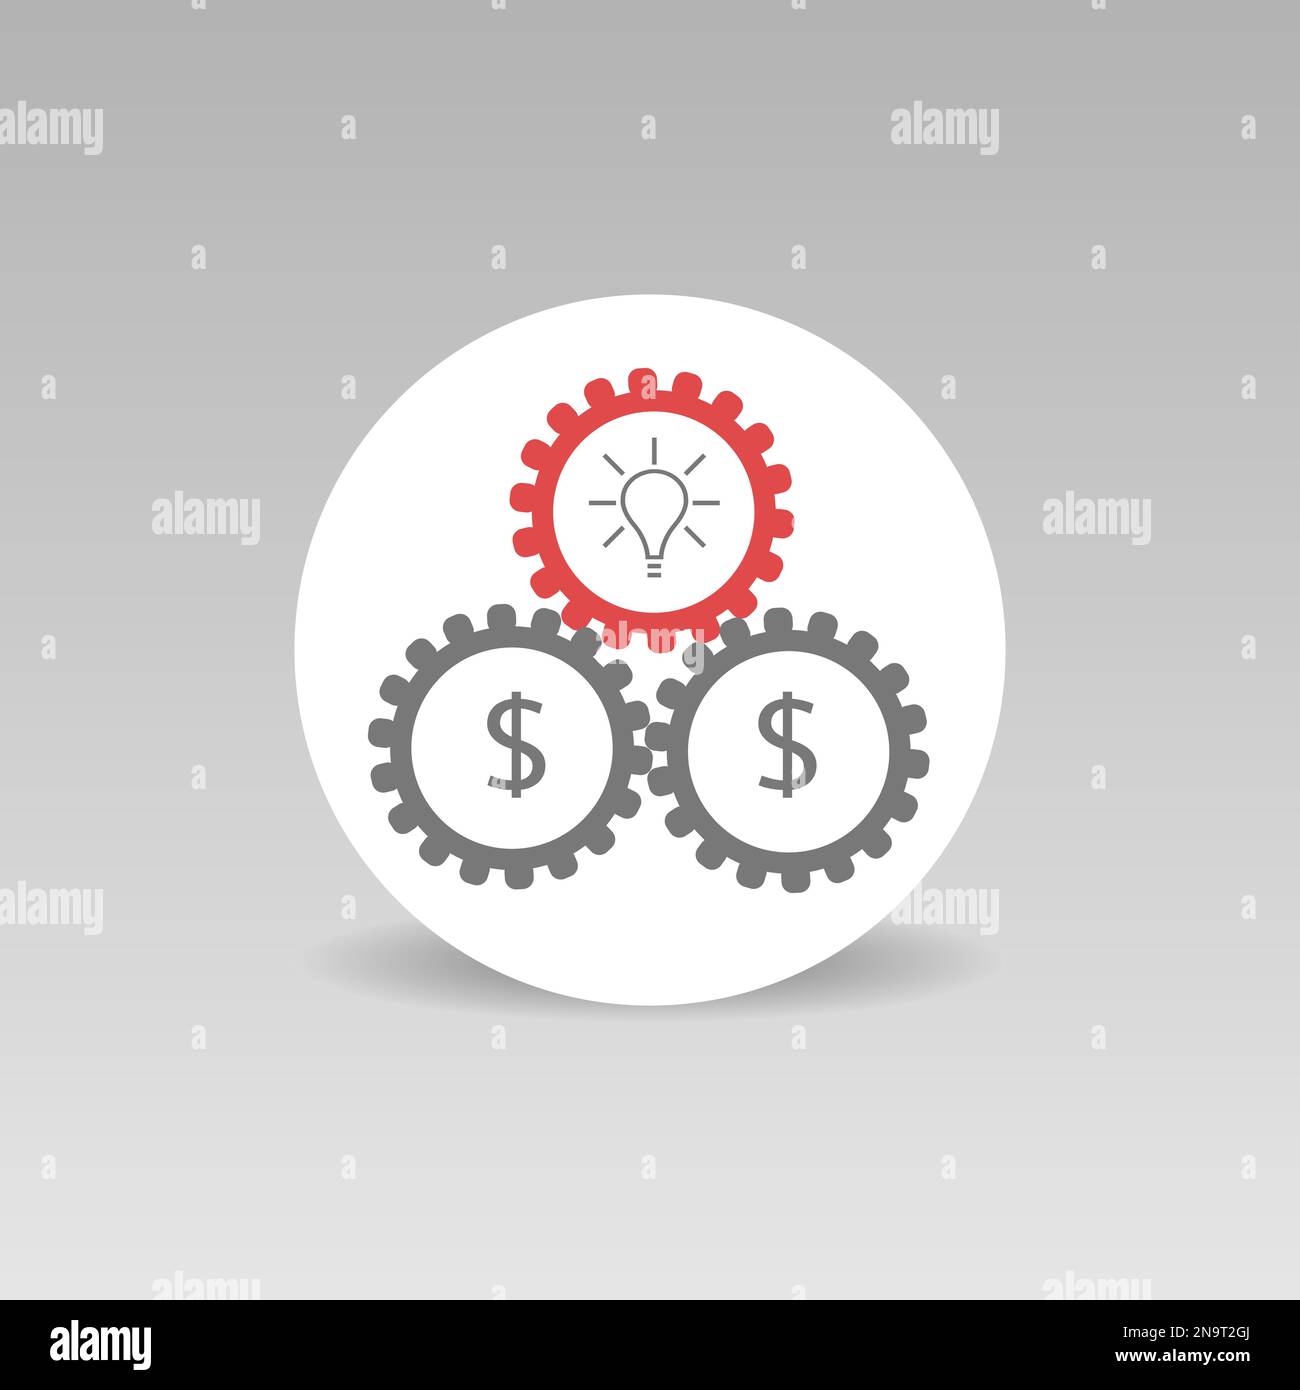 Vektorsymbol Gears mit Dollarzeichen für Geschäftsideen Stock Vektor